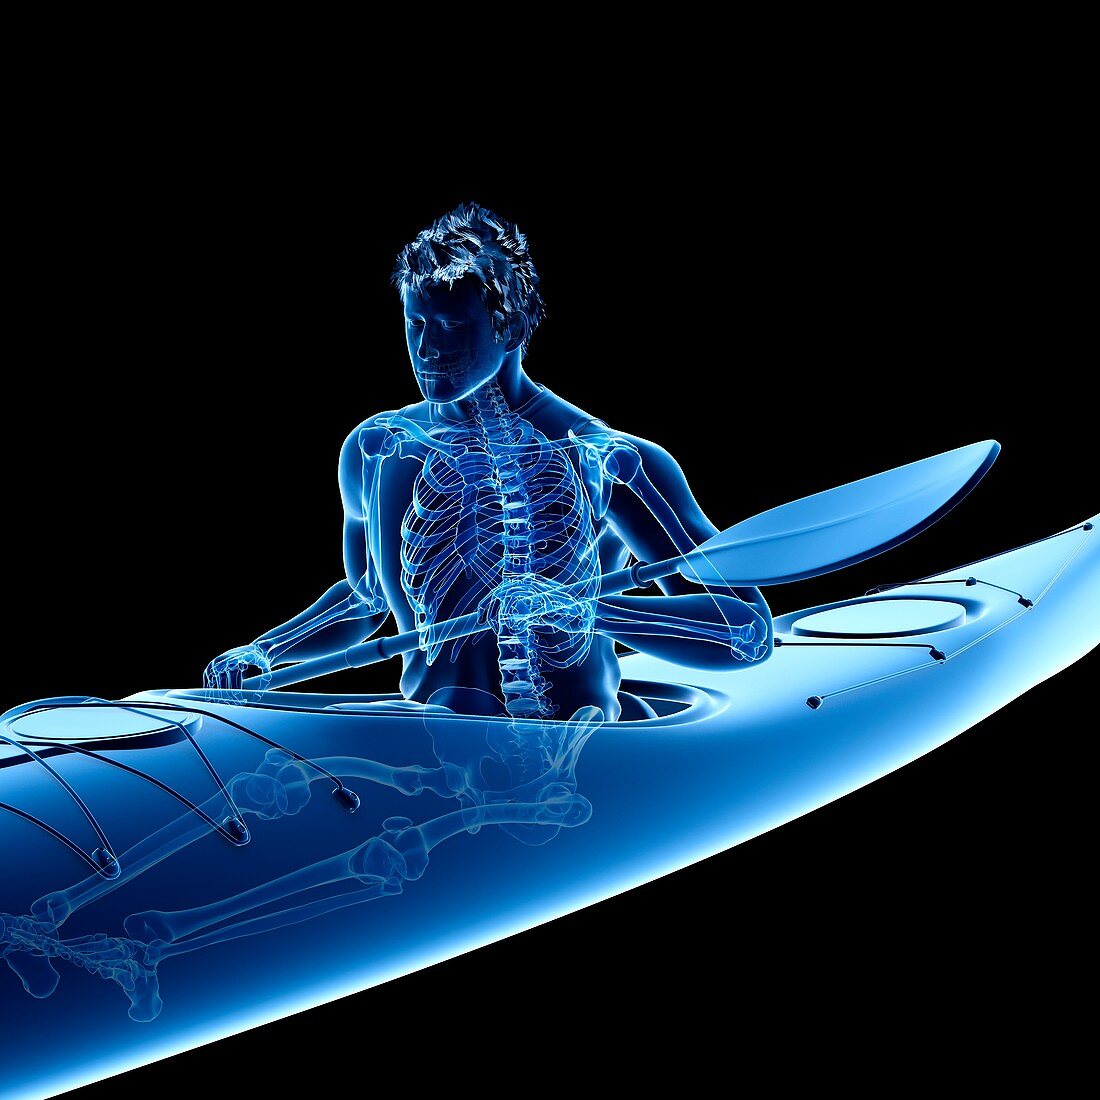 Canoeist's skeleton, illustration